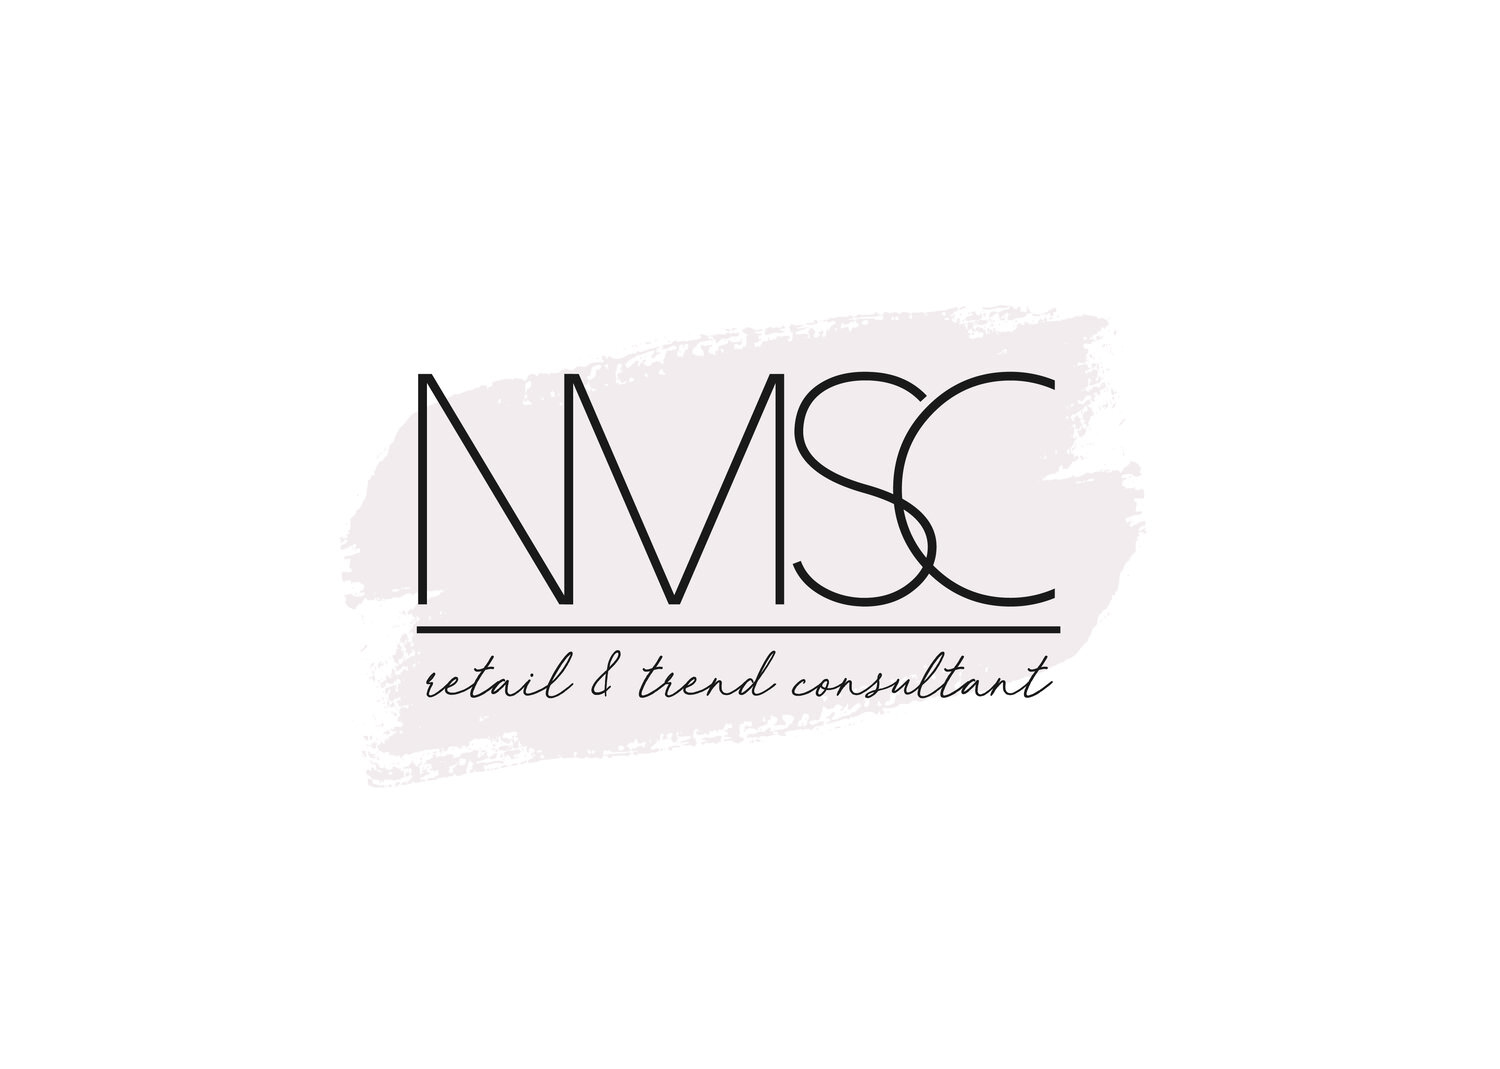 NMSC Ltd